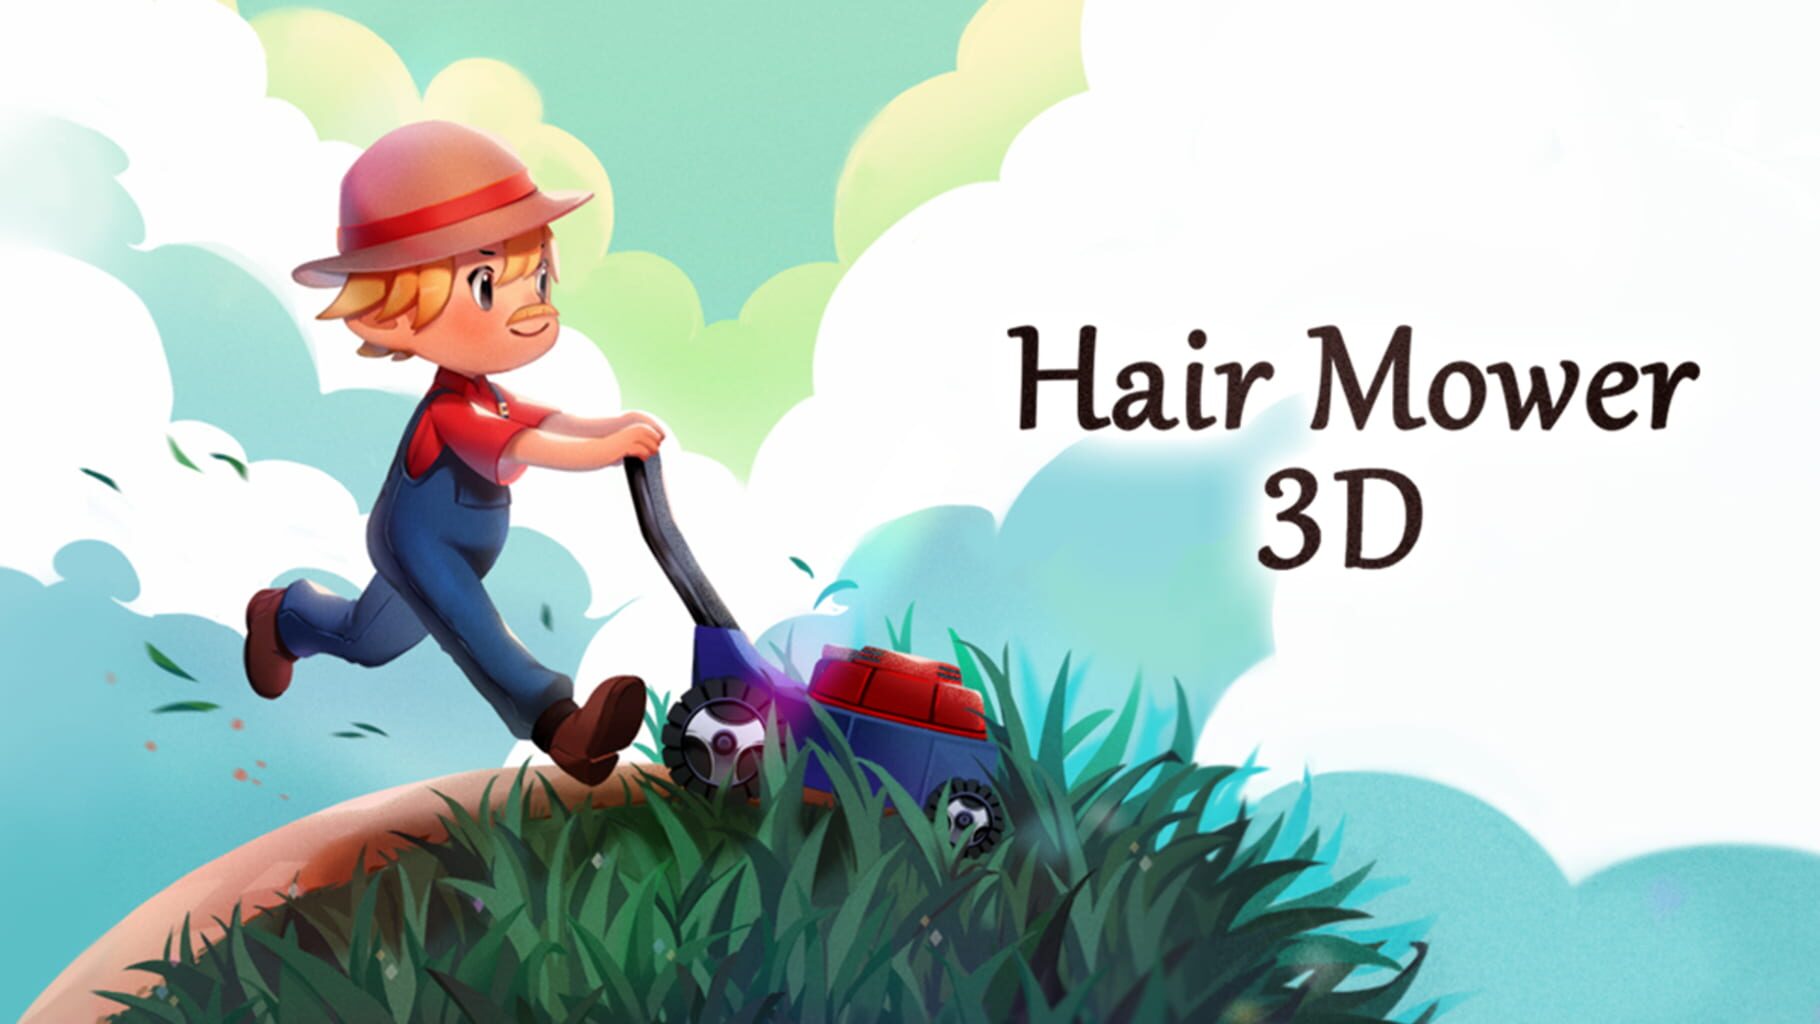 Hair Mower 3D artwork